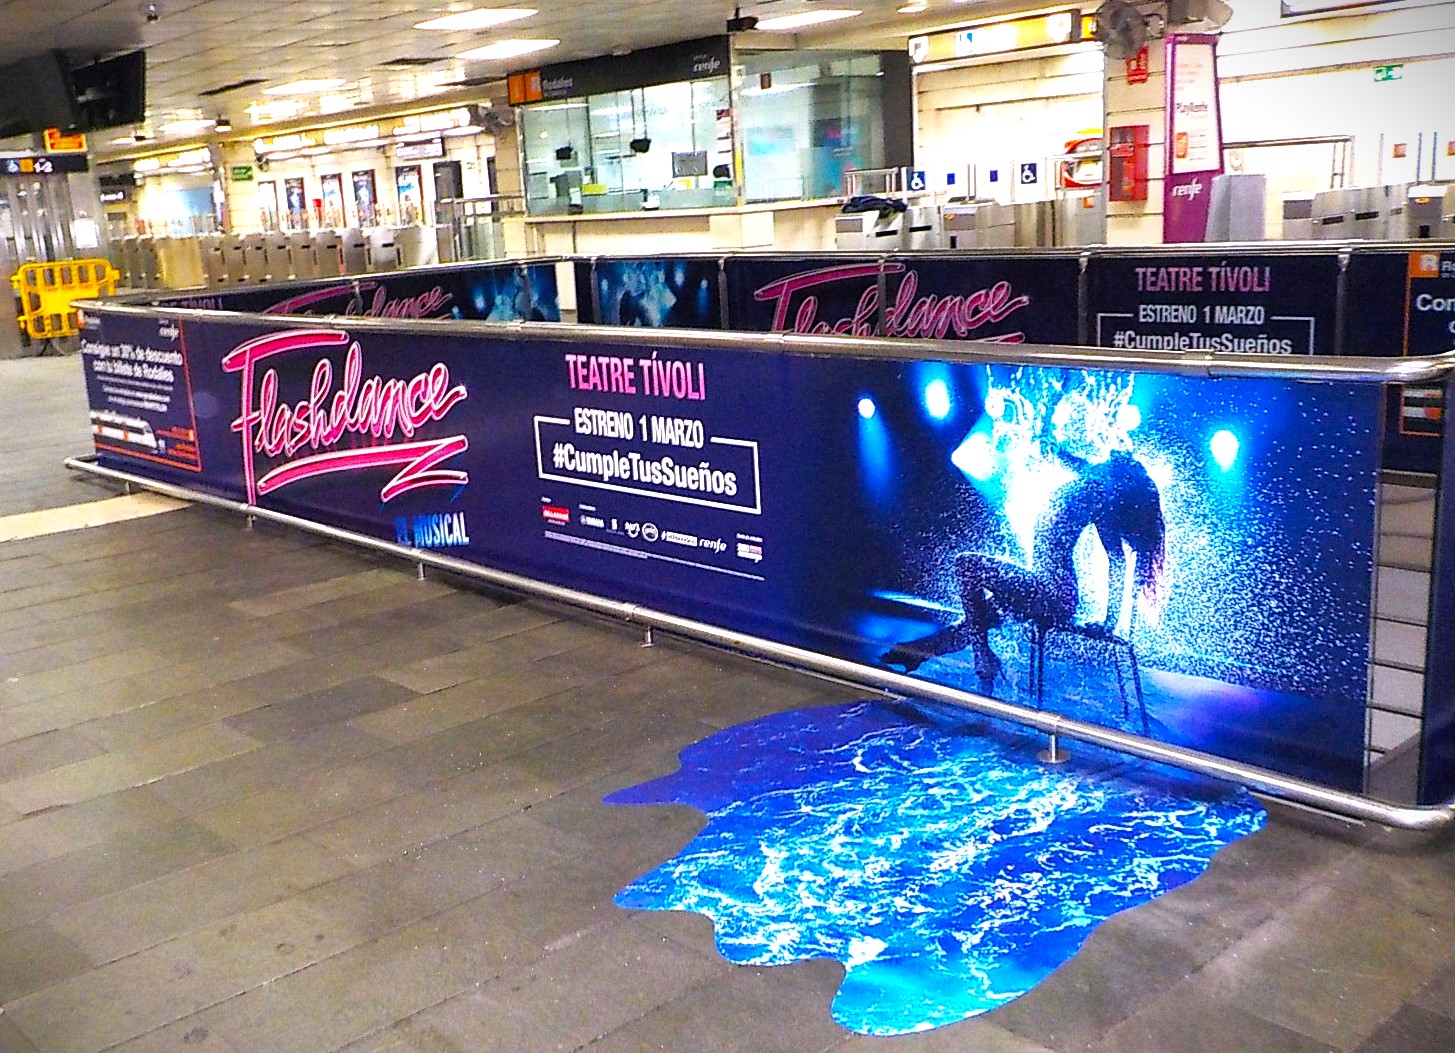 Acción para el musical Flashdance del Teatre Tivoli en la estación de cercanías de Plaça Catalunya de Barcelona.